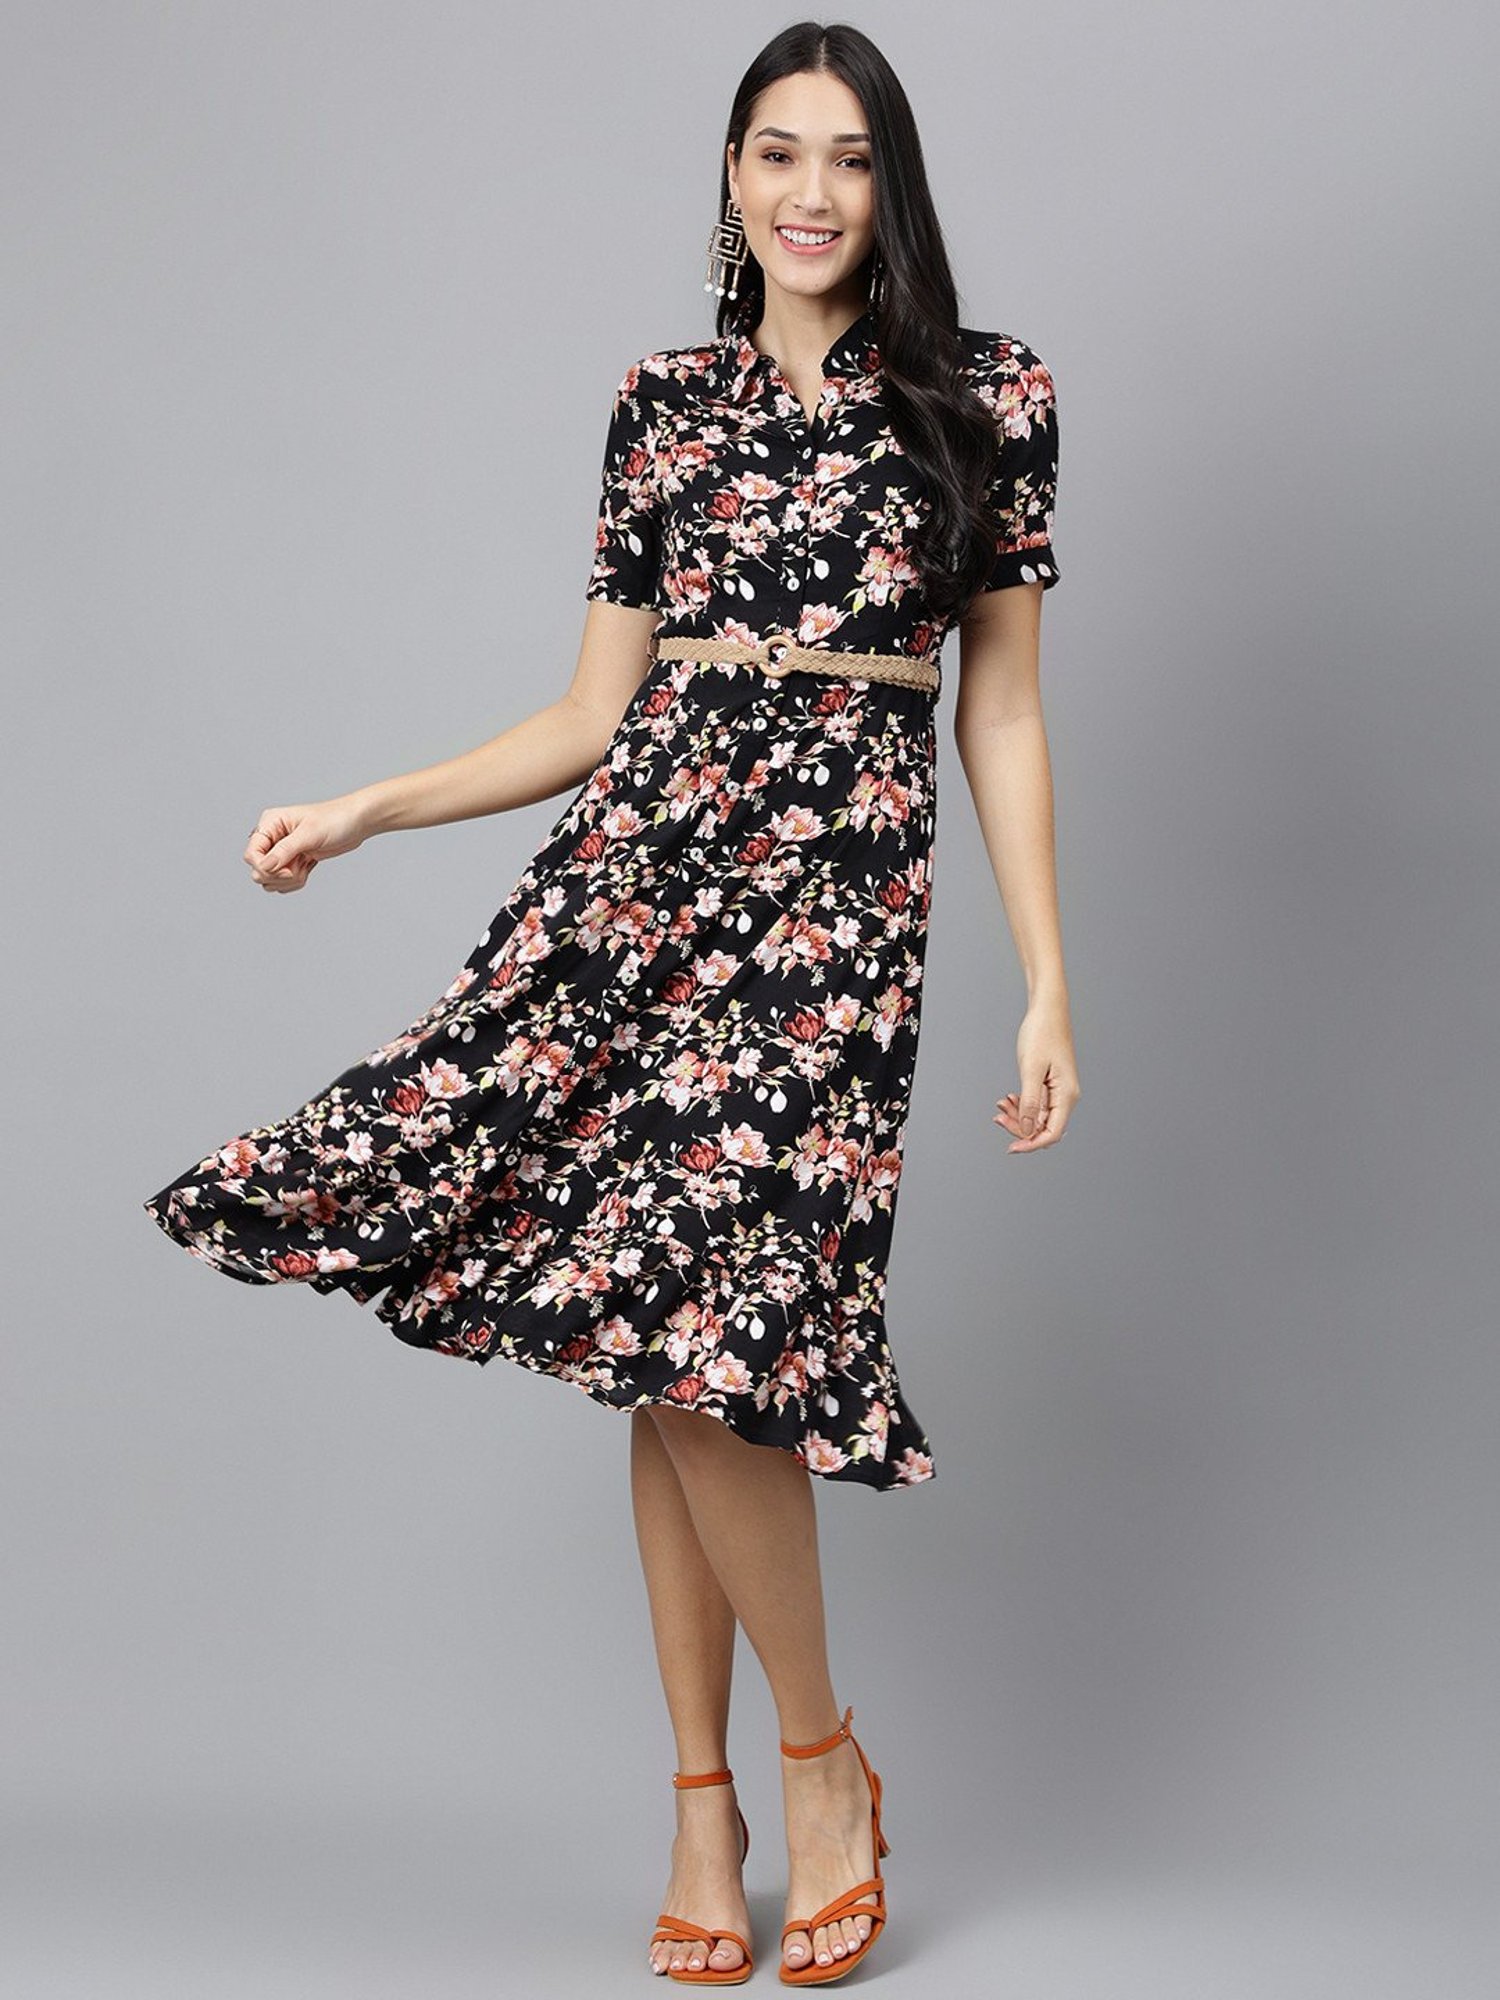 Chrisanne Clover Selena Latin Dress | Dresses